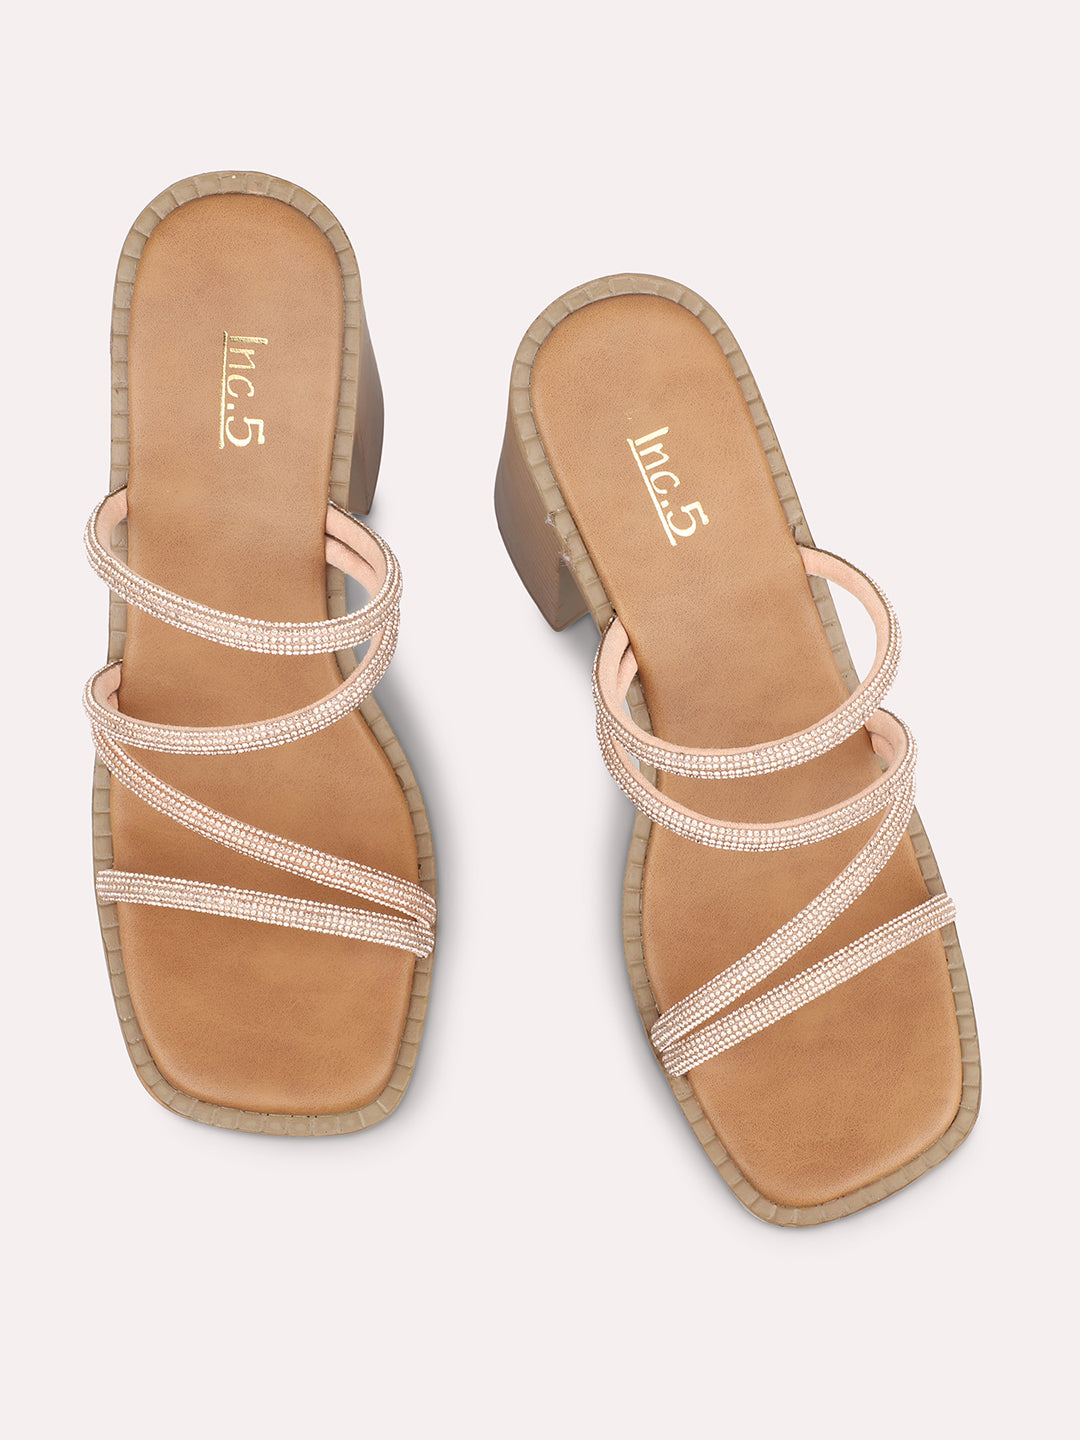 New Women's Open Toe Espadrille Slide Sandal Shoe Low Flat Platform Heel  Slip-On | eBay